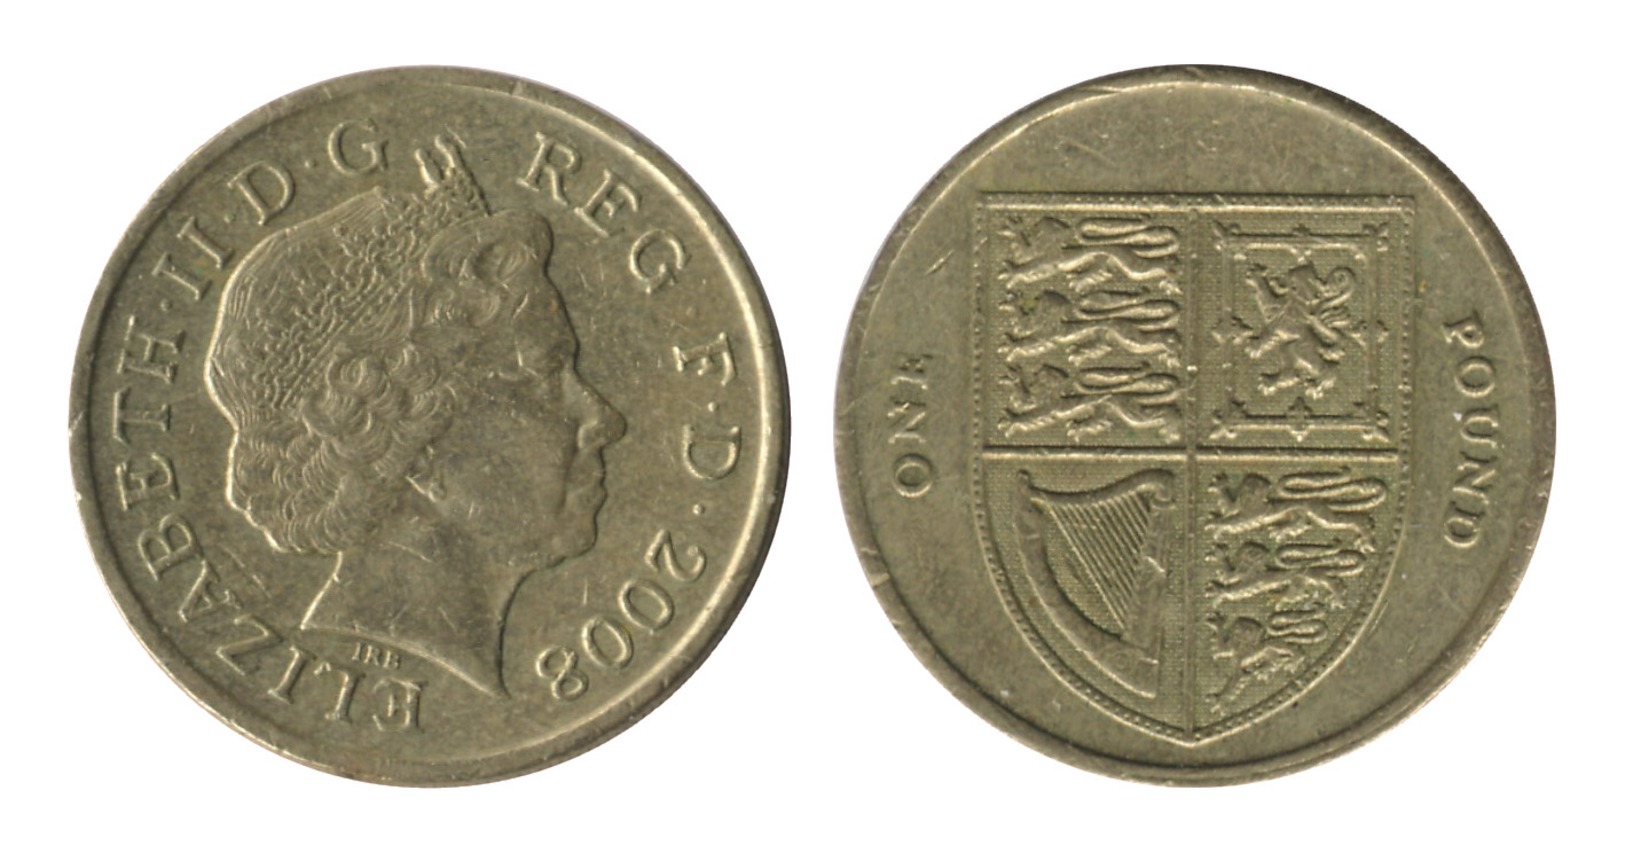 Great Britain / 2008 / 1 Pound / KM# 1113 / VF - 1 Pound